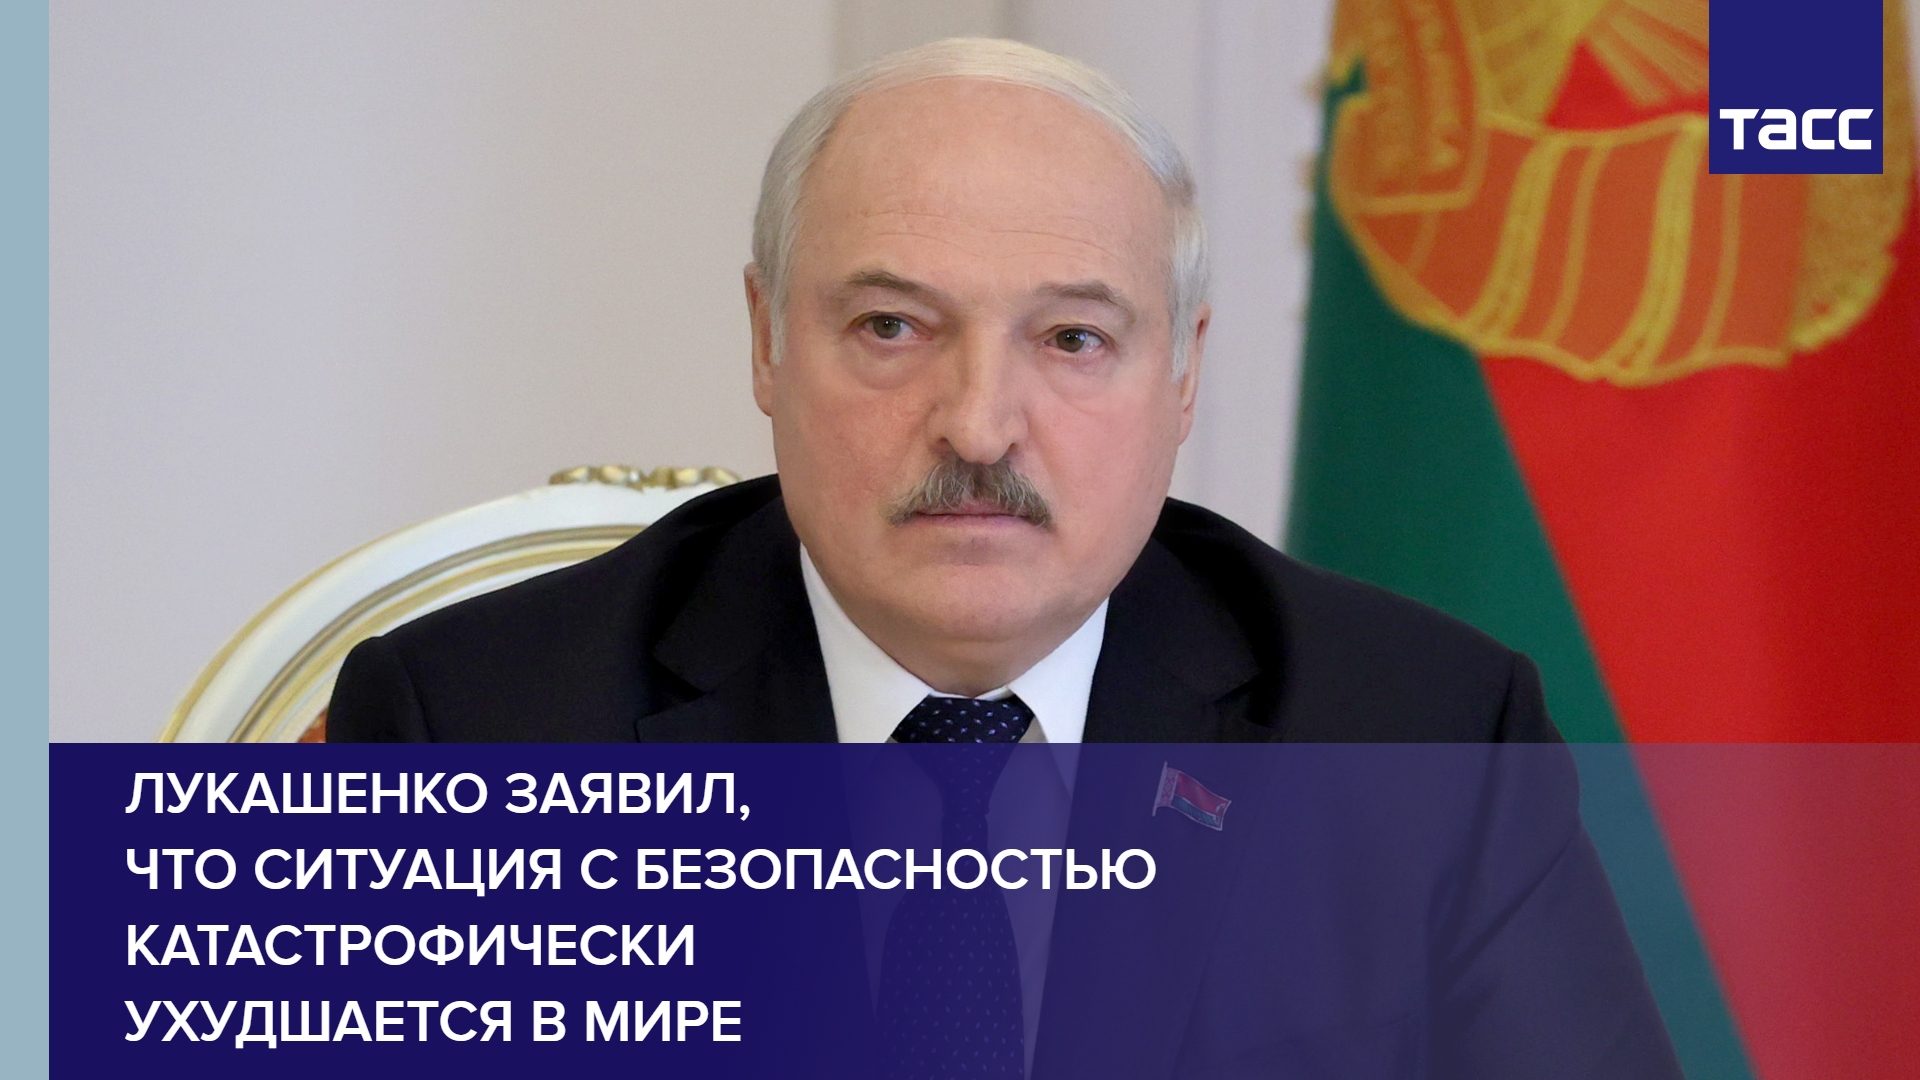 Лукашенко заявил, что ситуация с безопасностью катастрофически ухудшается в мире #shorts